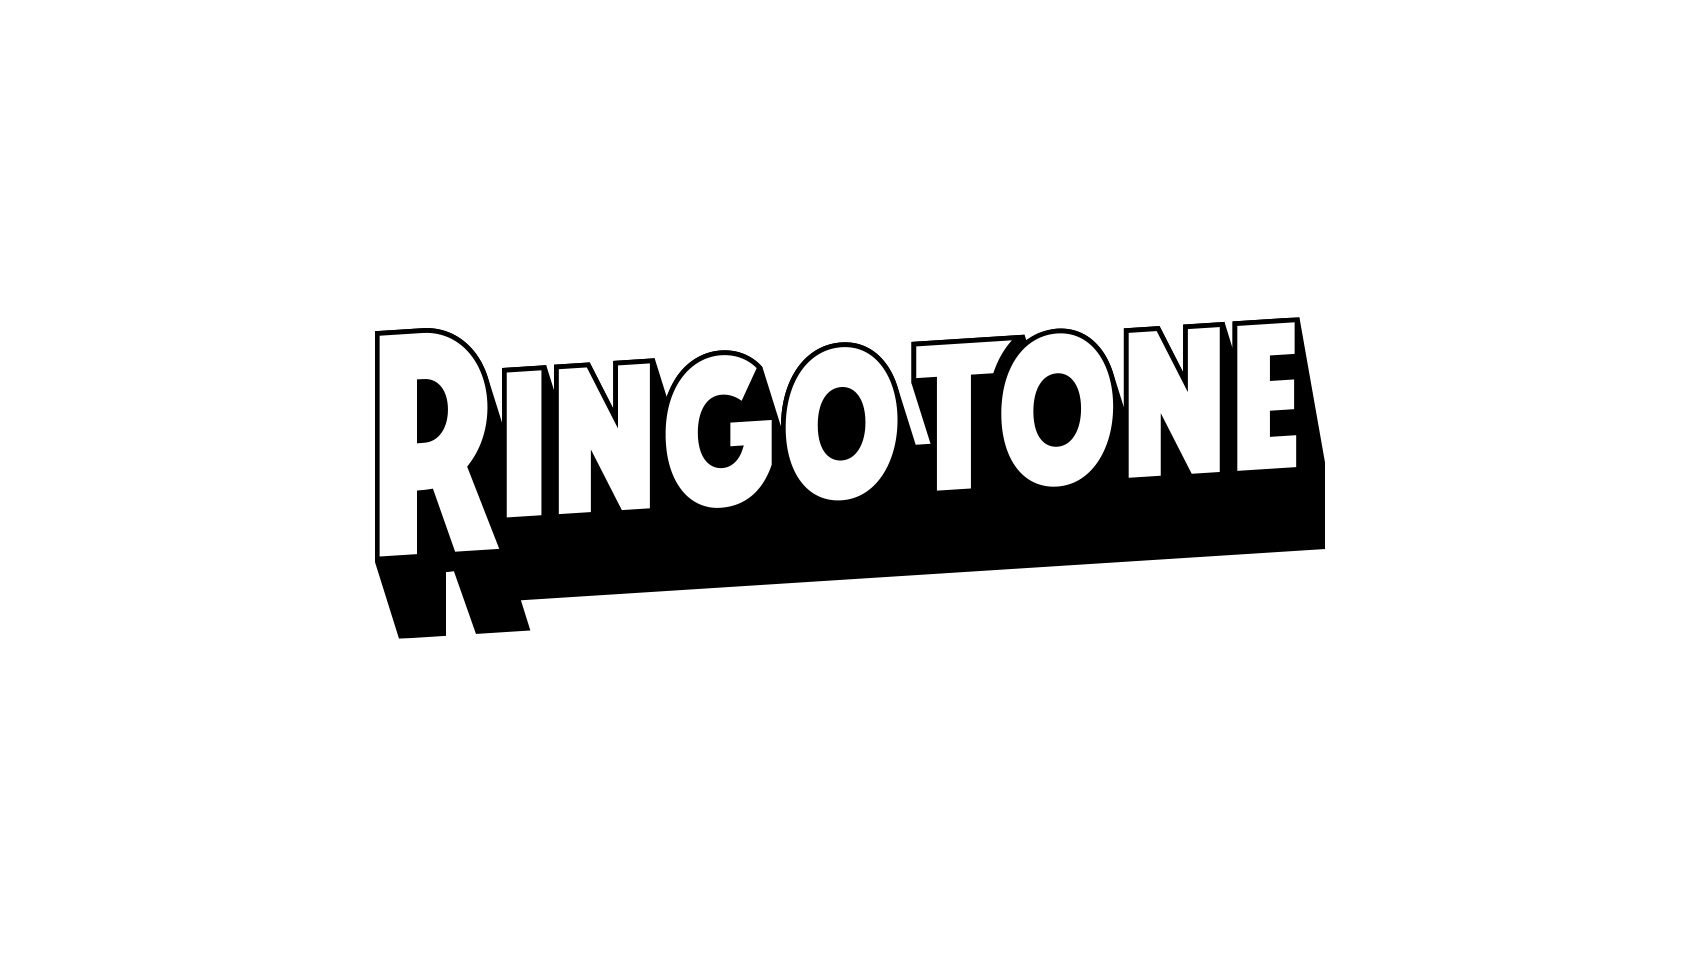 いま大注目の3ピースバンド「RINGO TONE」さんのロゴデザイン